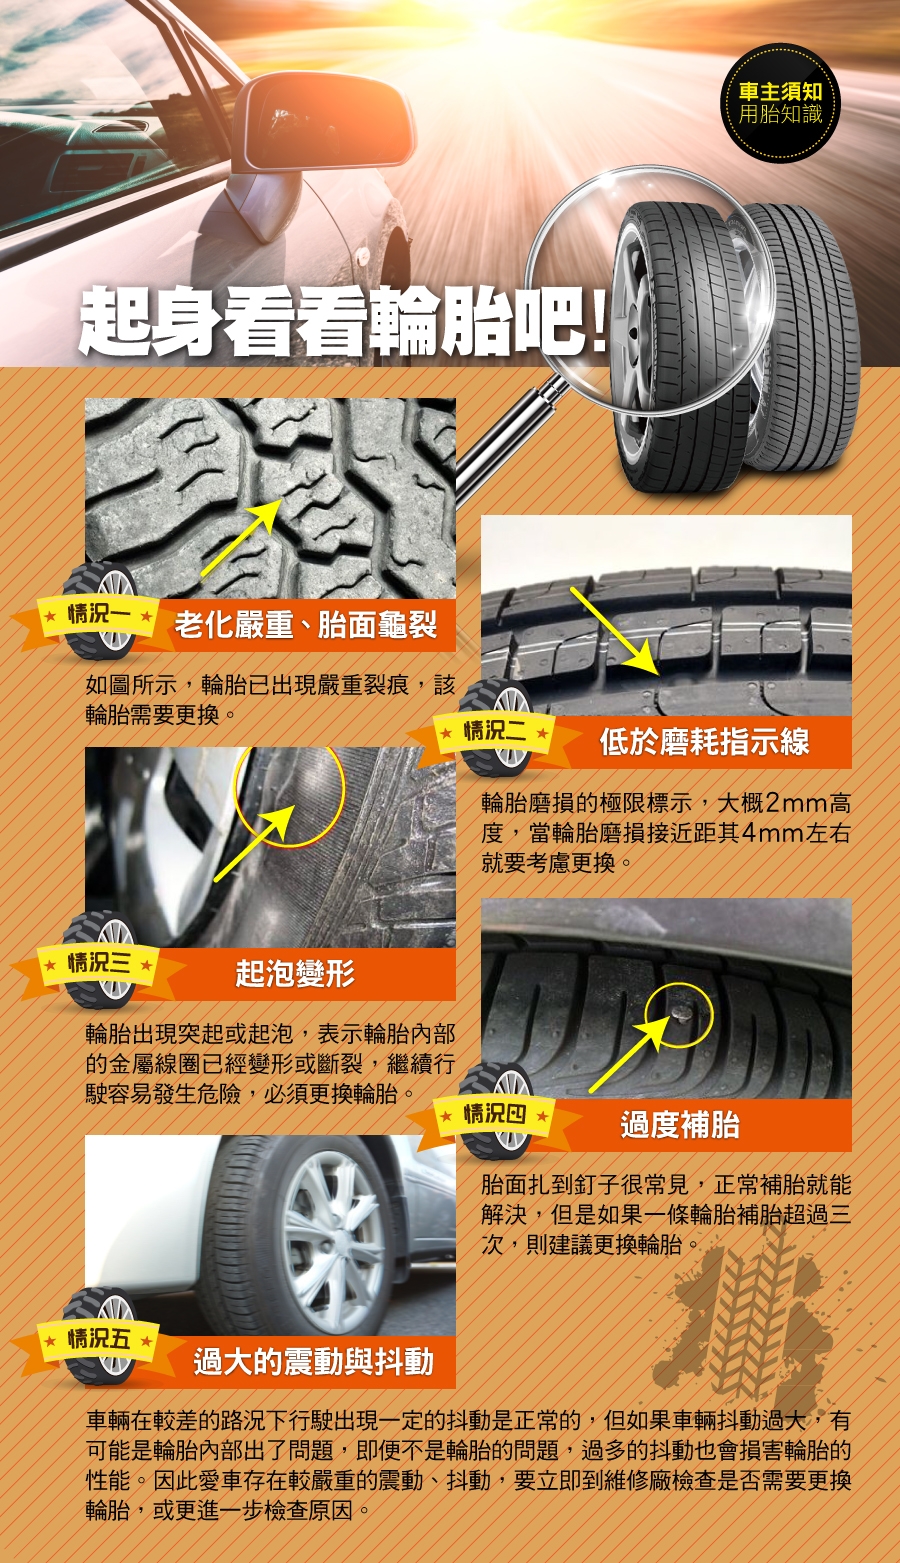 【普利司通】 EP150環保輪胎_205/55/16_一入組_含專業安裝 (EP150)